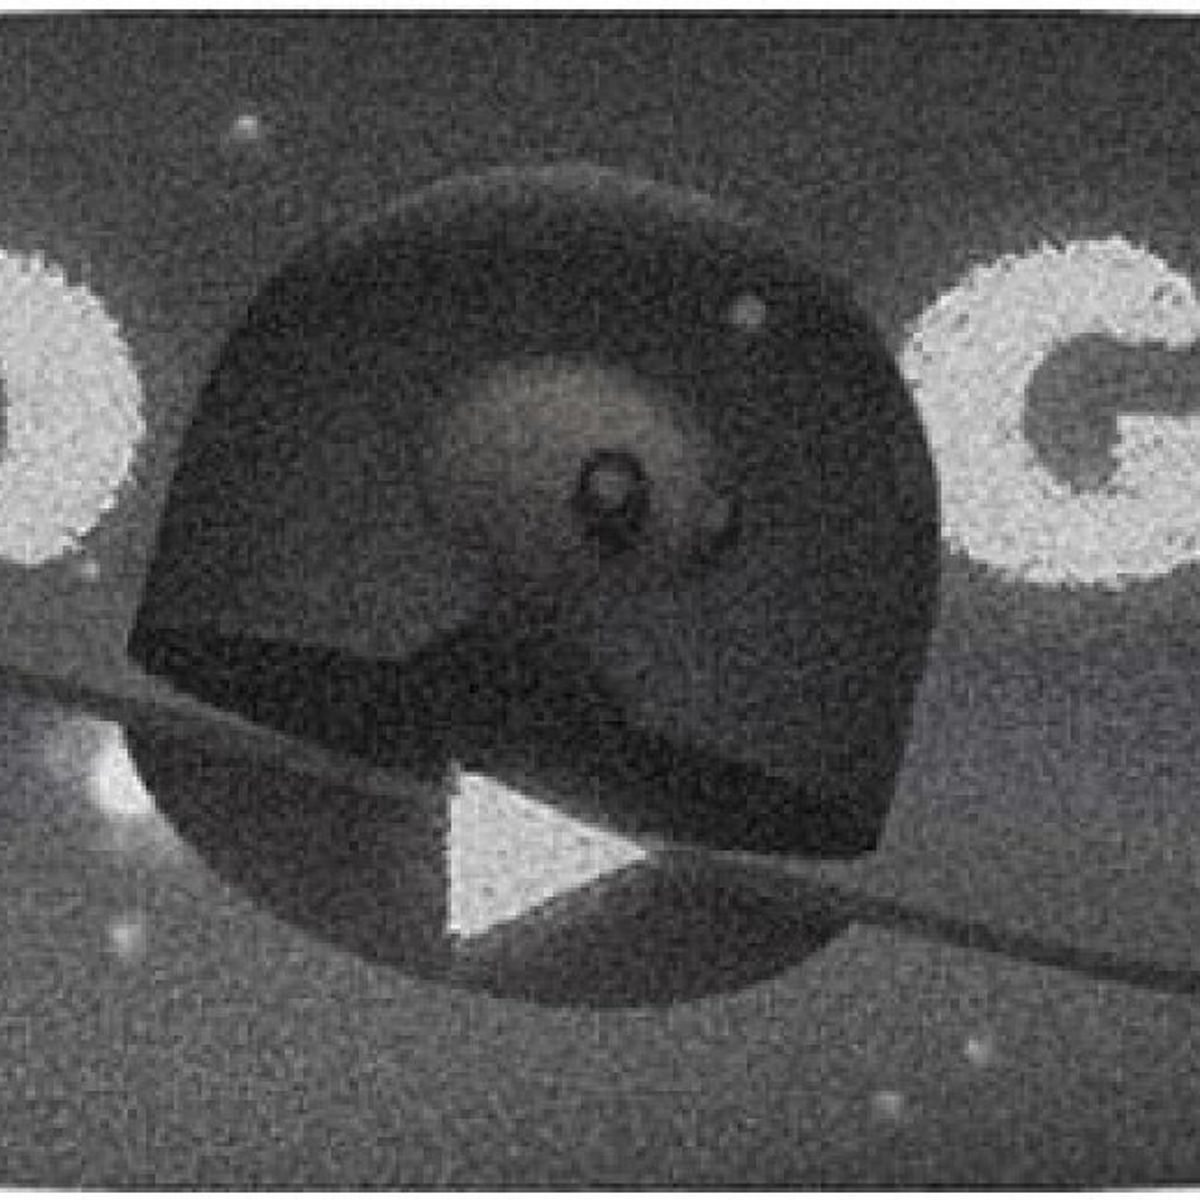 Google comemora o 66º aniversário do caso Roswell com um jogo